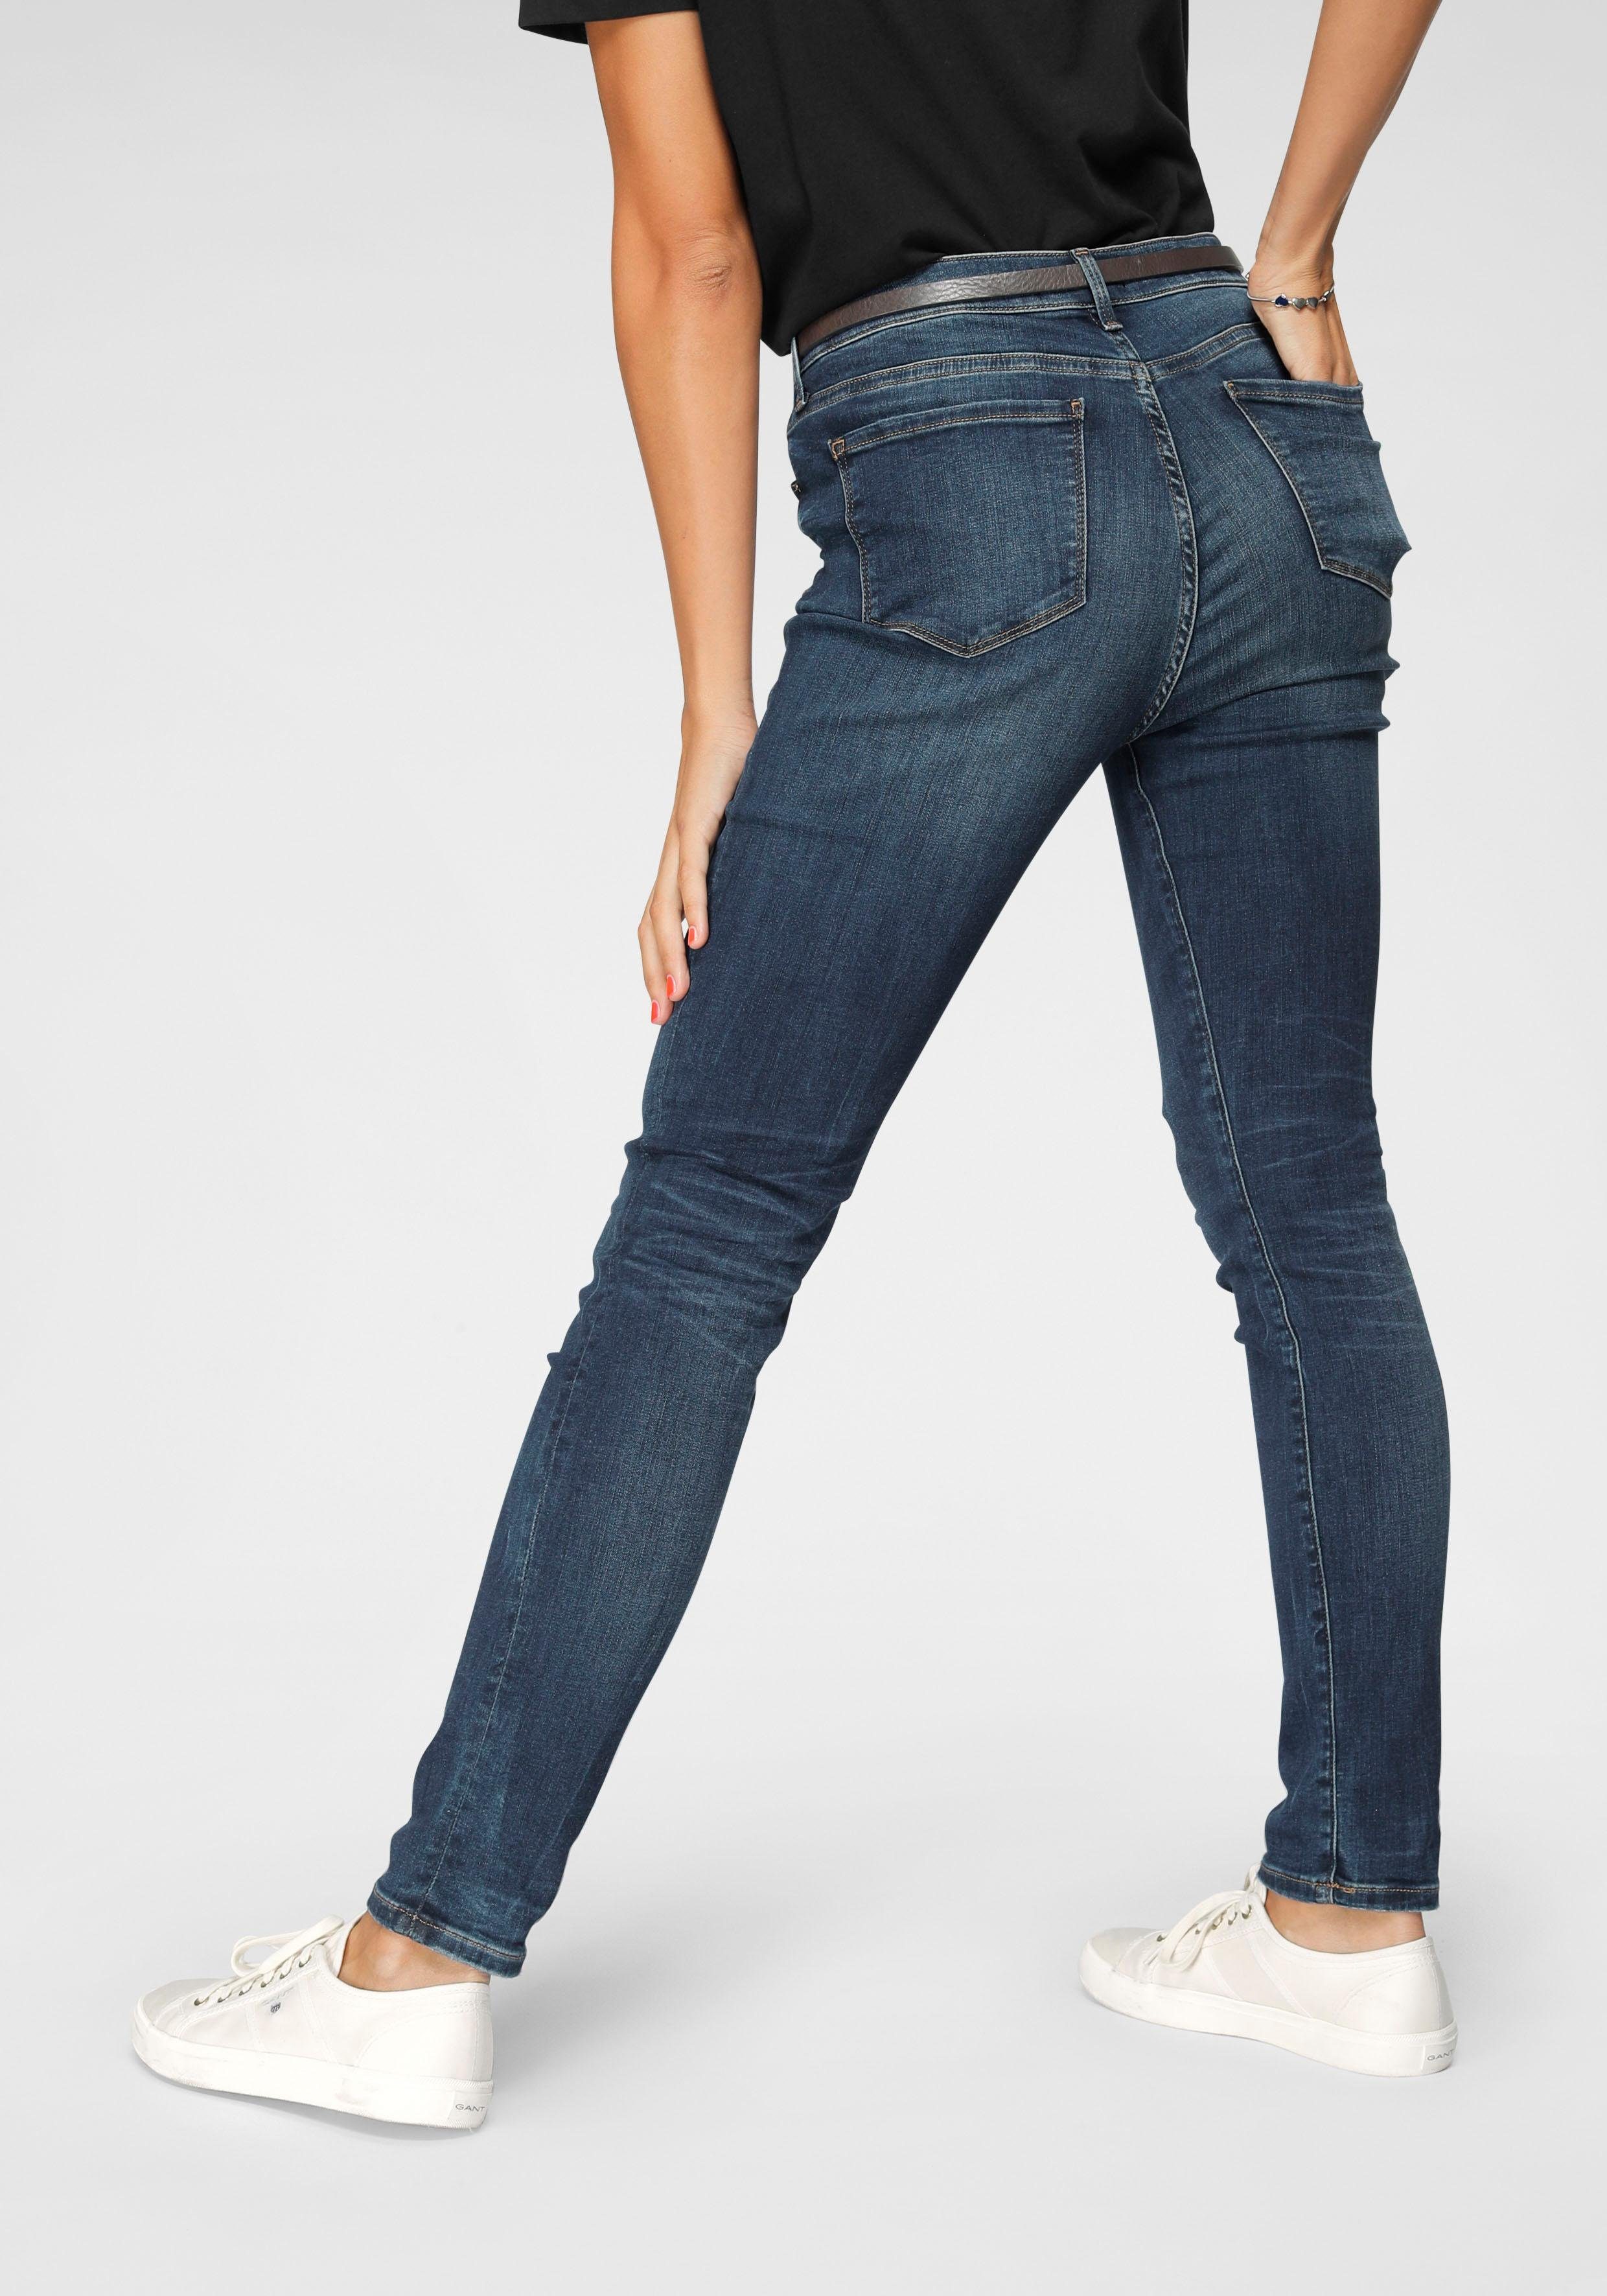 Ankle-Jeans für Damen kaufen » knöchelfreie Jeans | OTTO